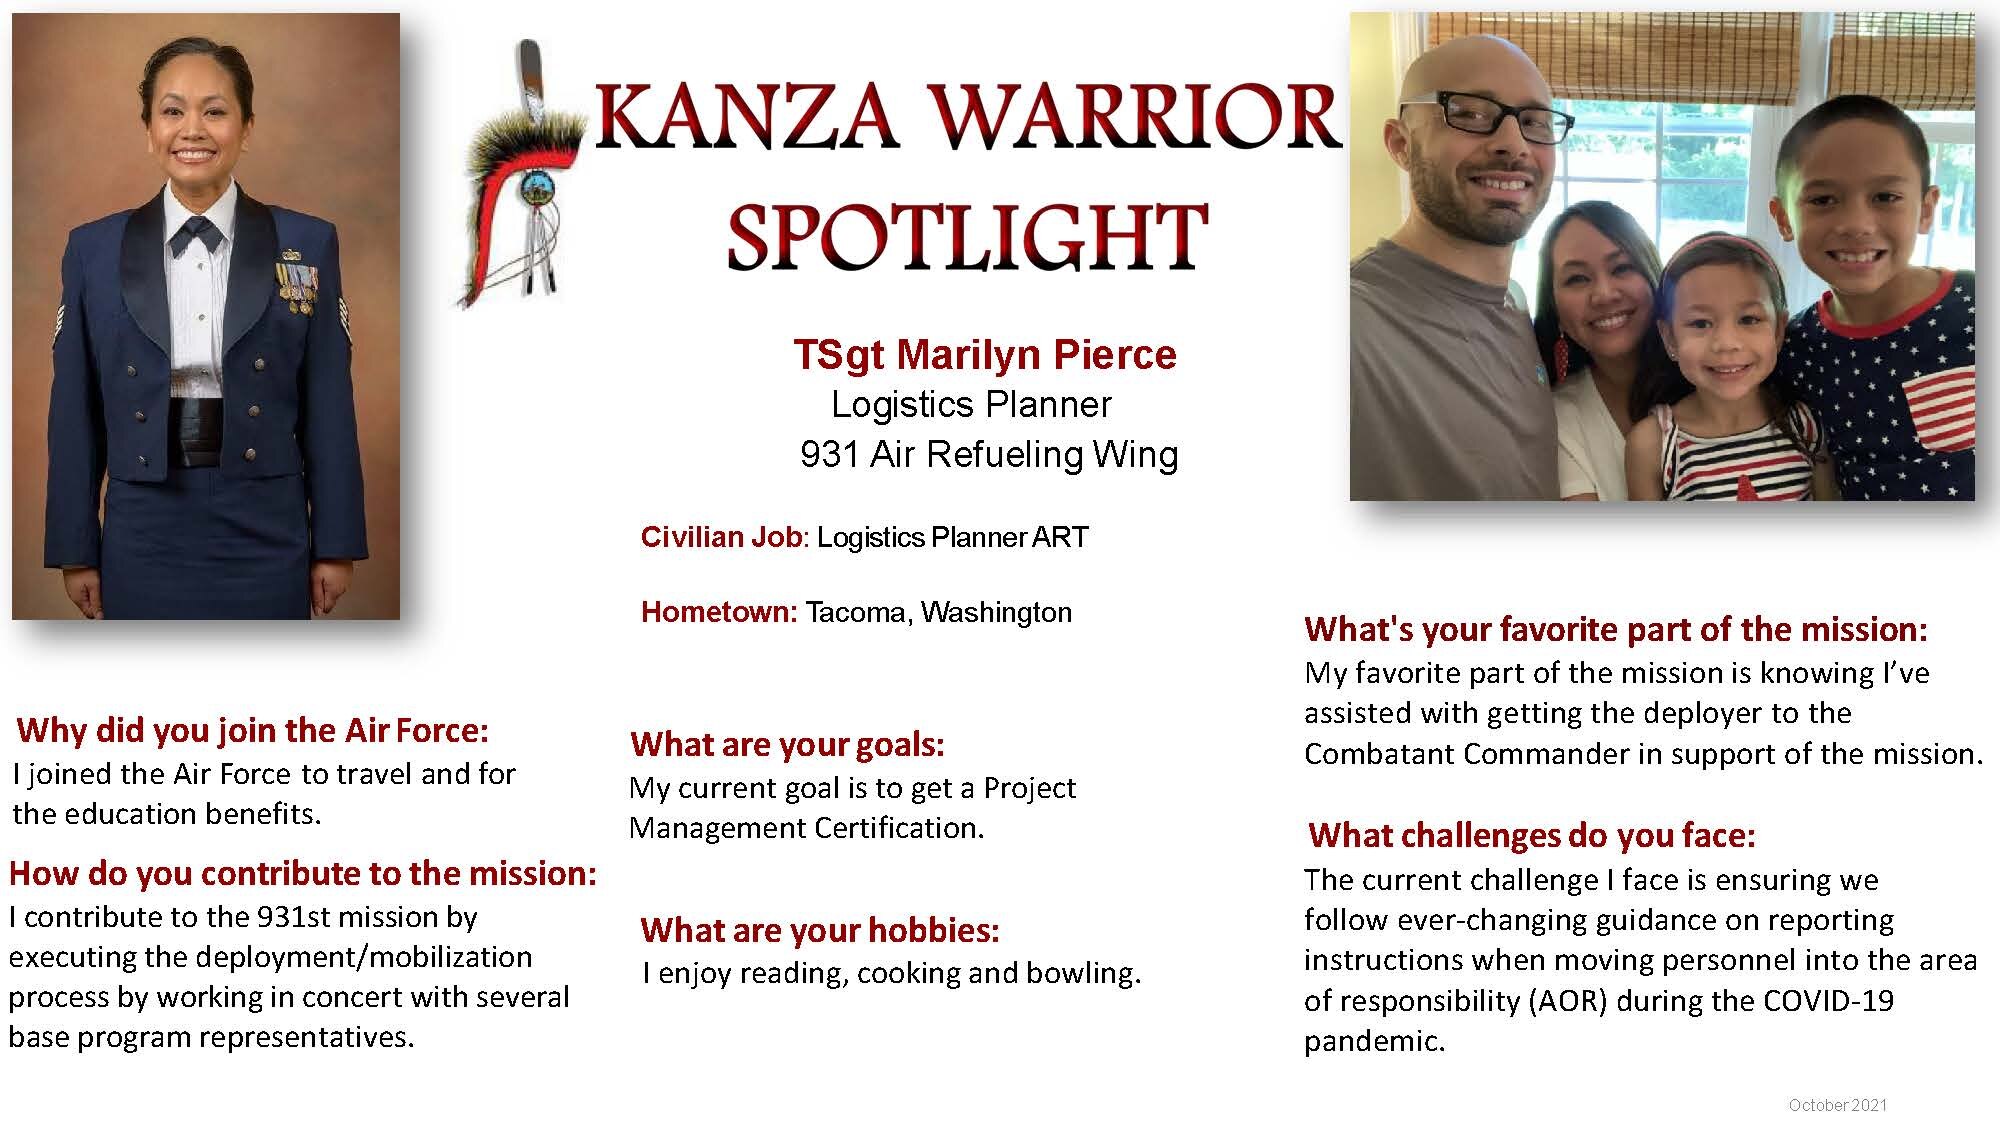 KANZA Warrior Spotlight October 2021